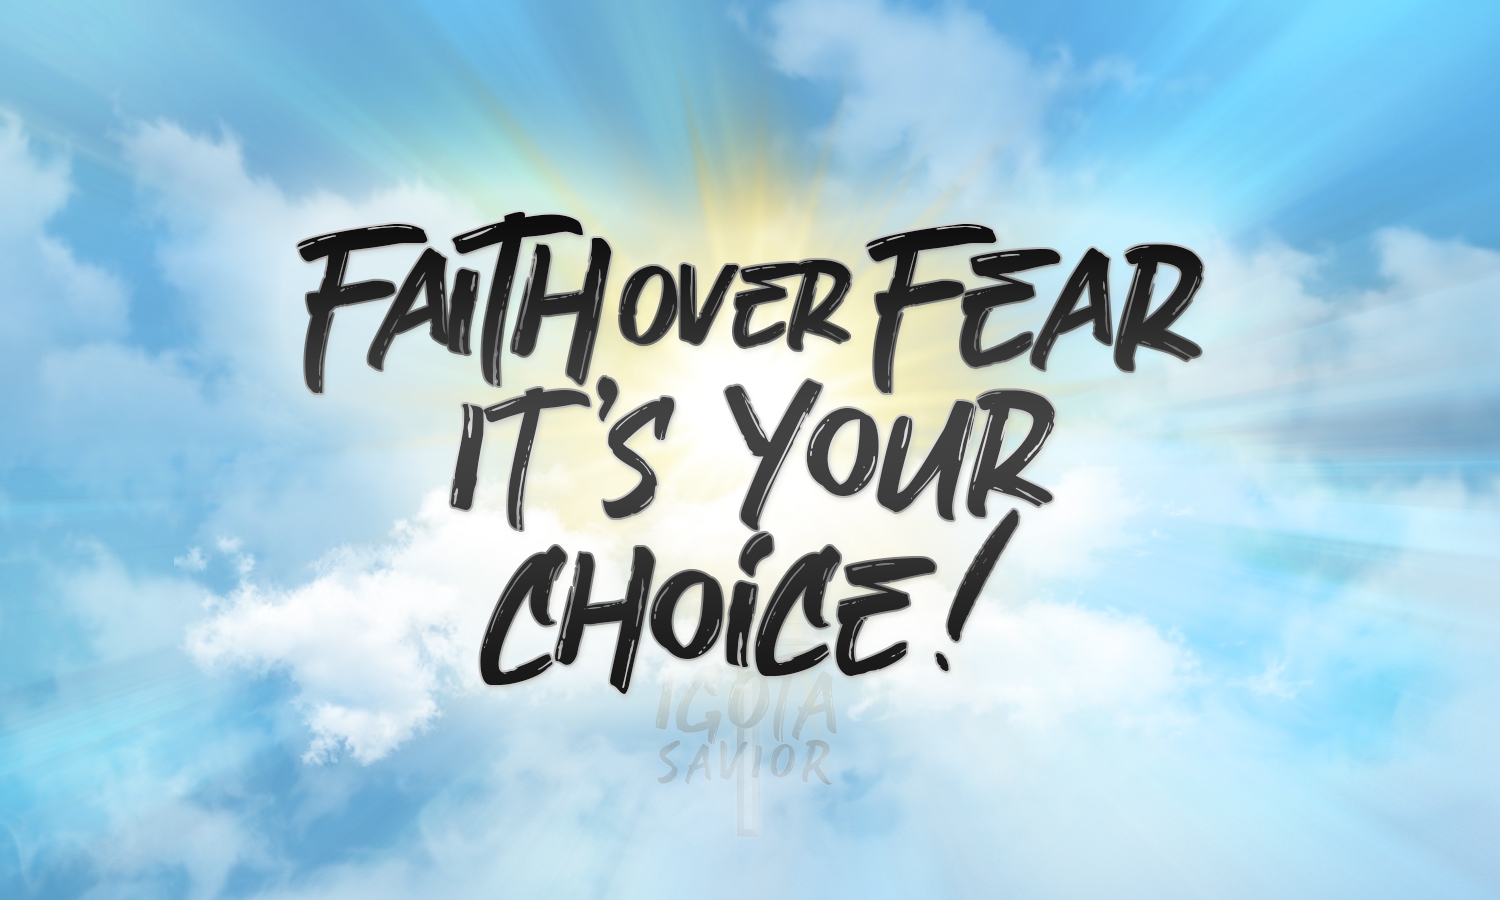 Faith Over Fear - It's Your Choice!